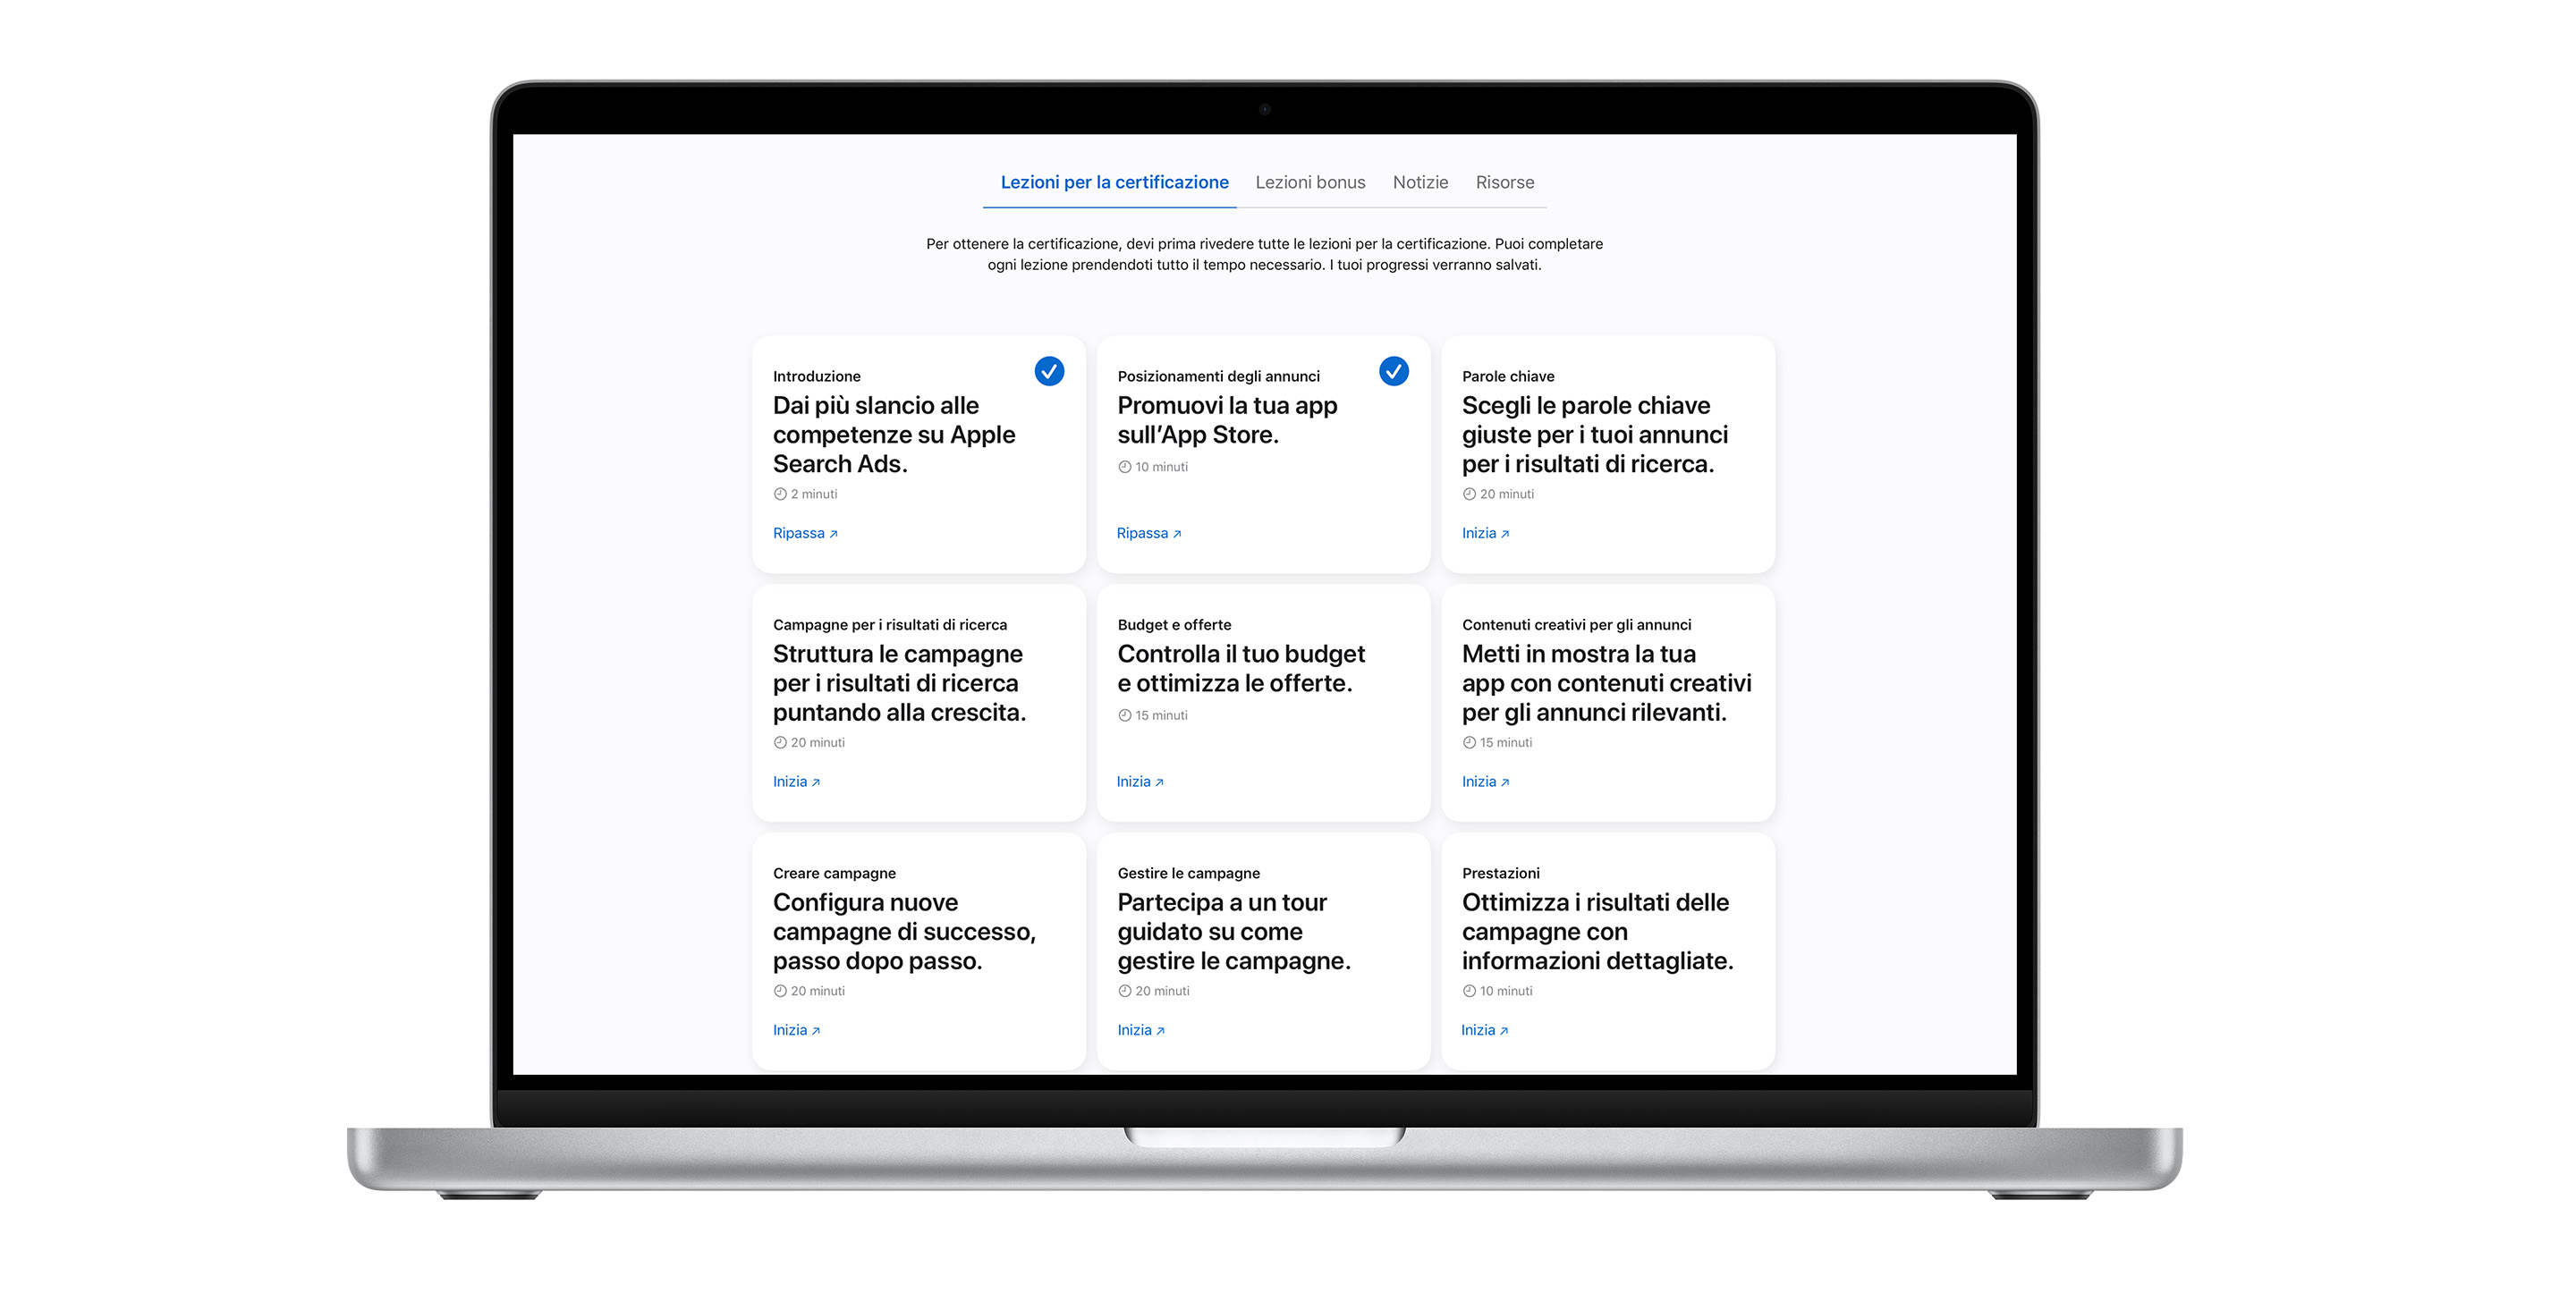 Pagina delle lezioni per la certificazione Apple Search Ads che mostra nove moduli di lezione. Le prime due lezioni hanno un segno di spunta blu, a indicare che sono state completate.